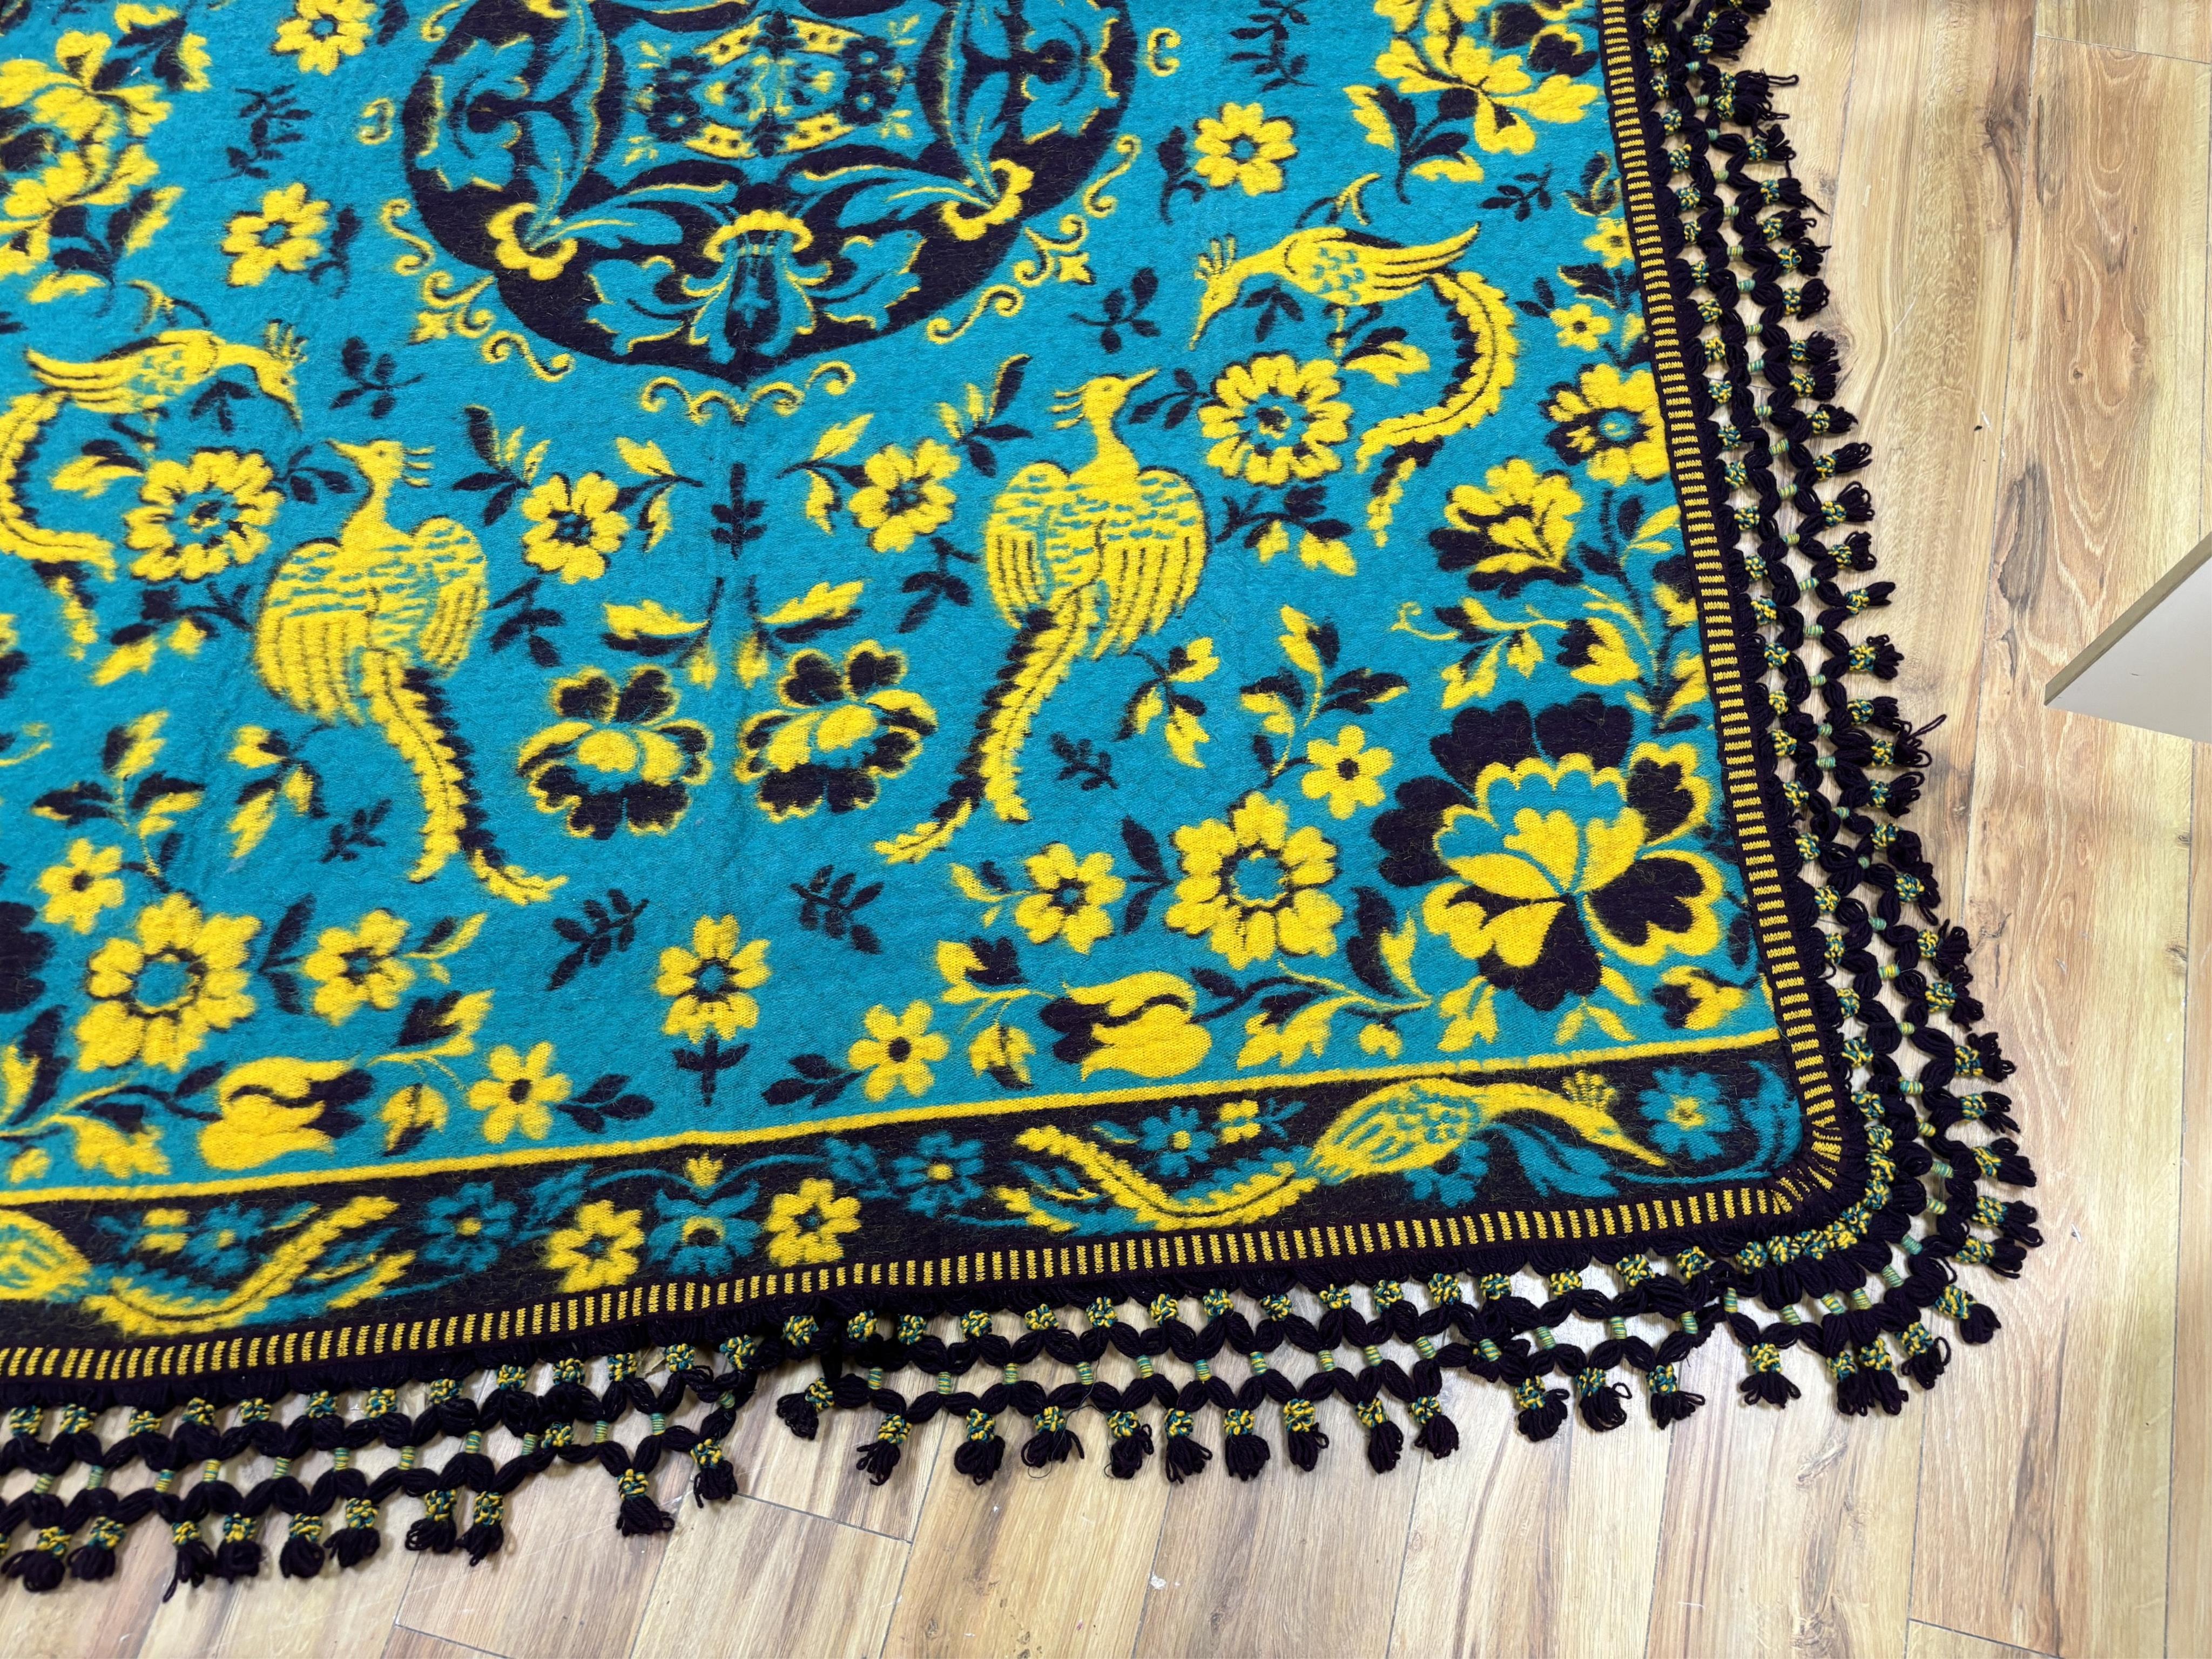 A large Zamorana pure wool blanket, 170 x 236cm